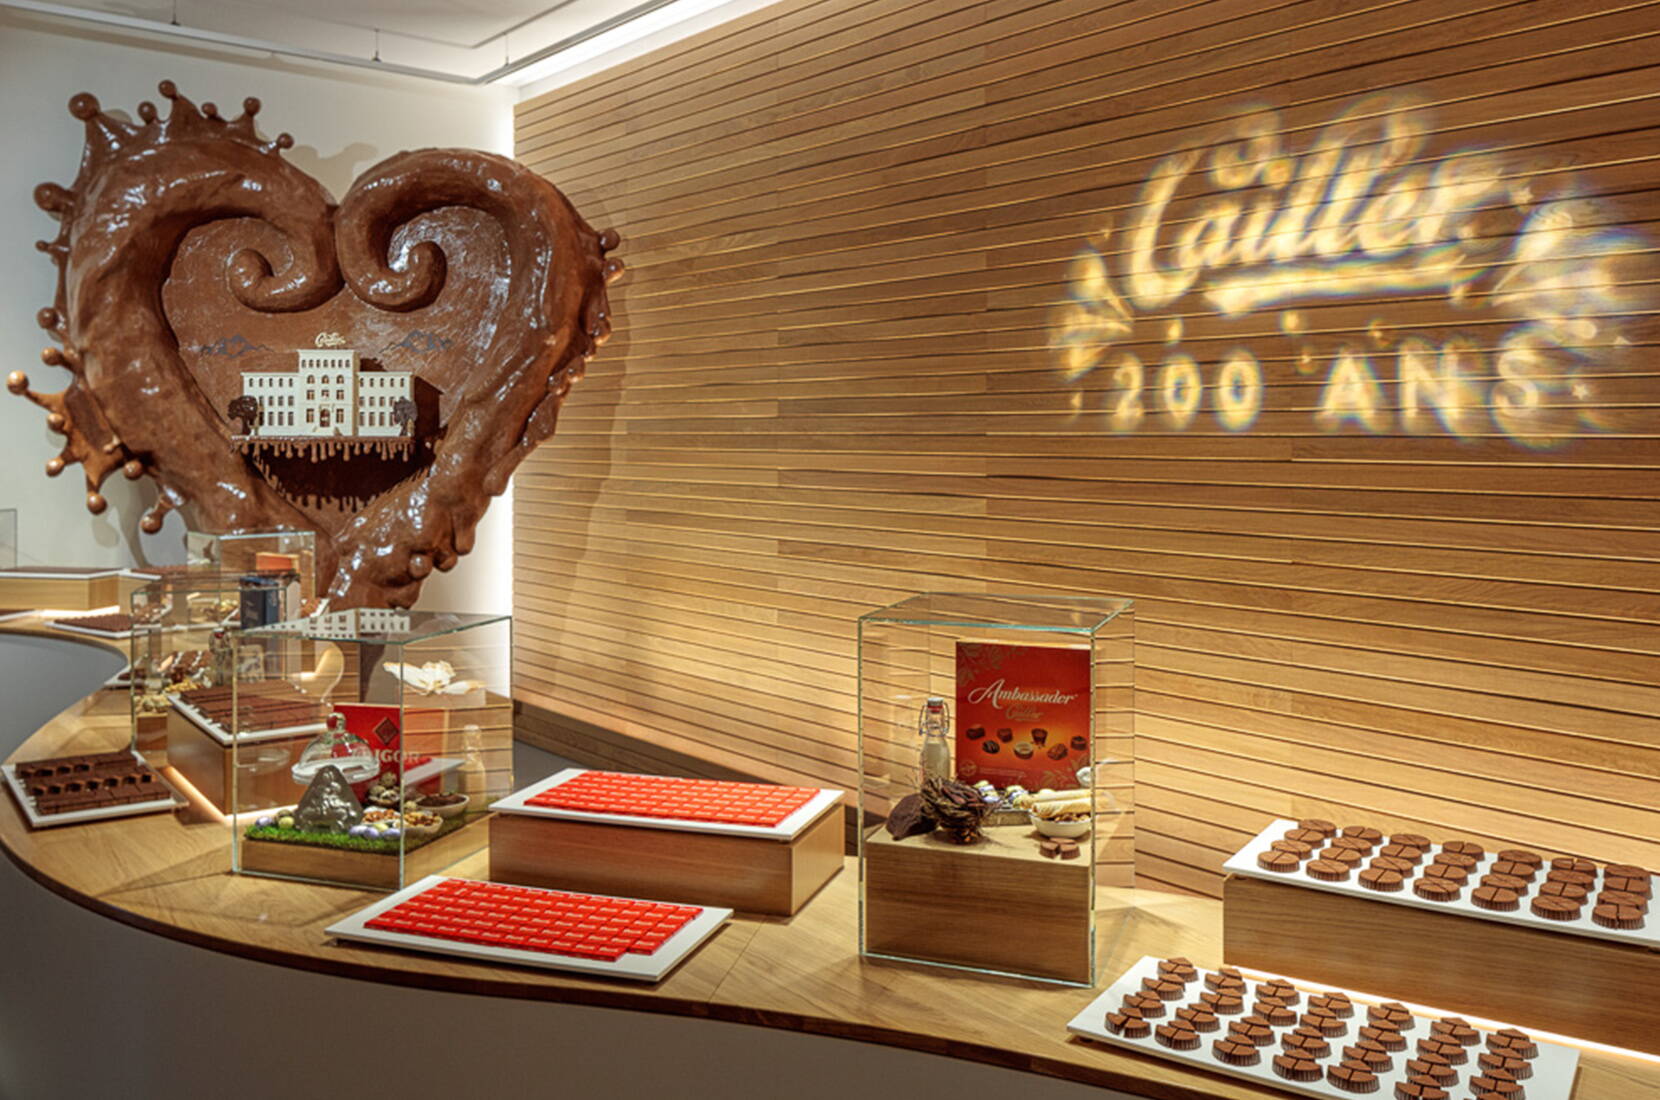 Tauche ein in die süsse Welt der Schokolade bei einem Besuch in der Maison Cailler. Die interaktive Führung durch die Cailler Fabrik entführt dich für etwa eine Stunde auf eine fesselnde Reise durch die Geschichte der Schokolade, von den Azteken bis zu den Innovationen von heute.